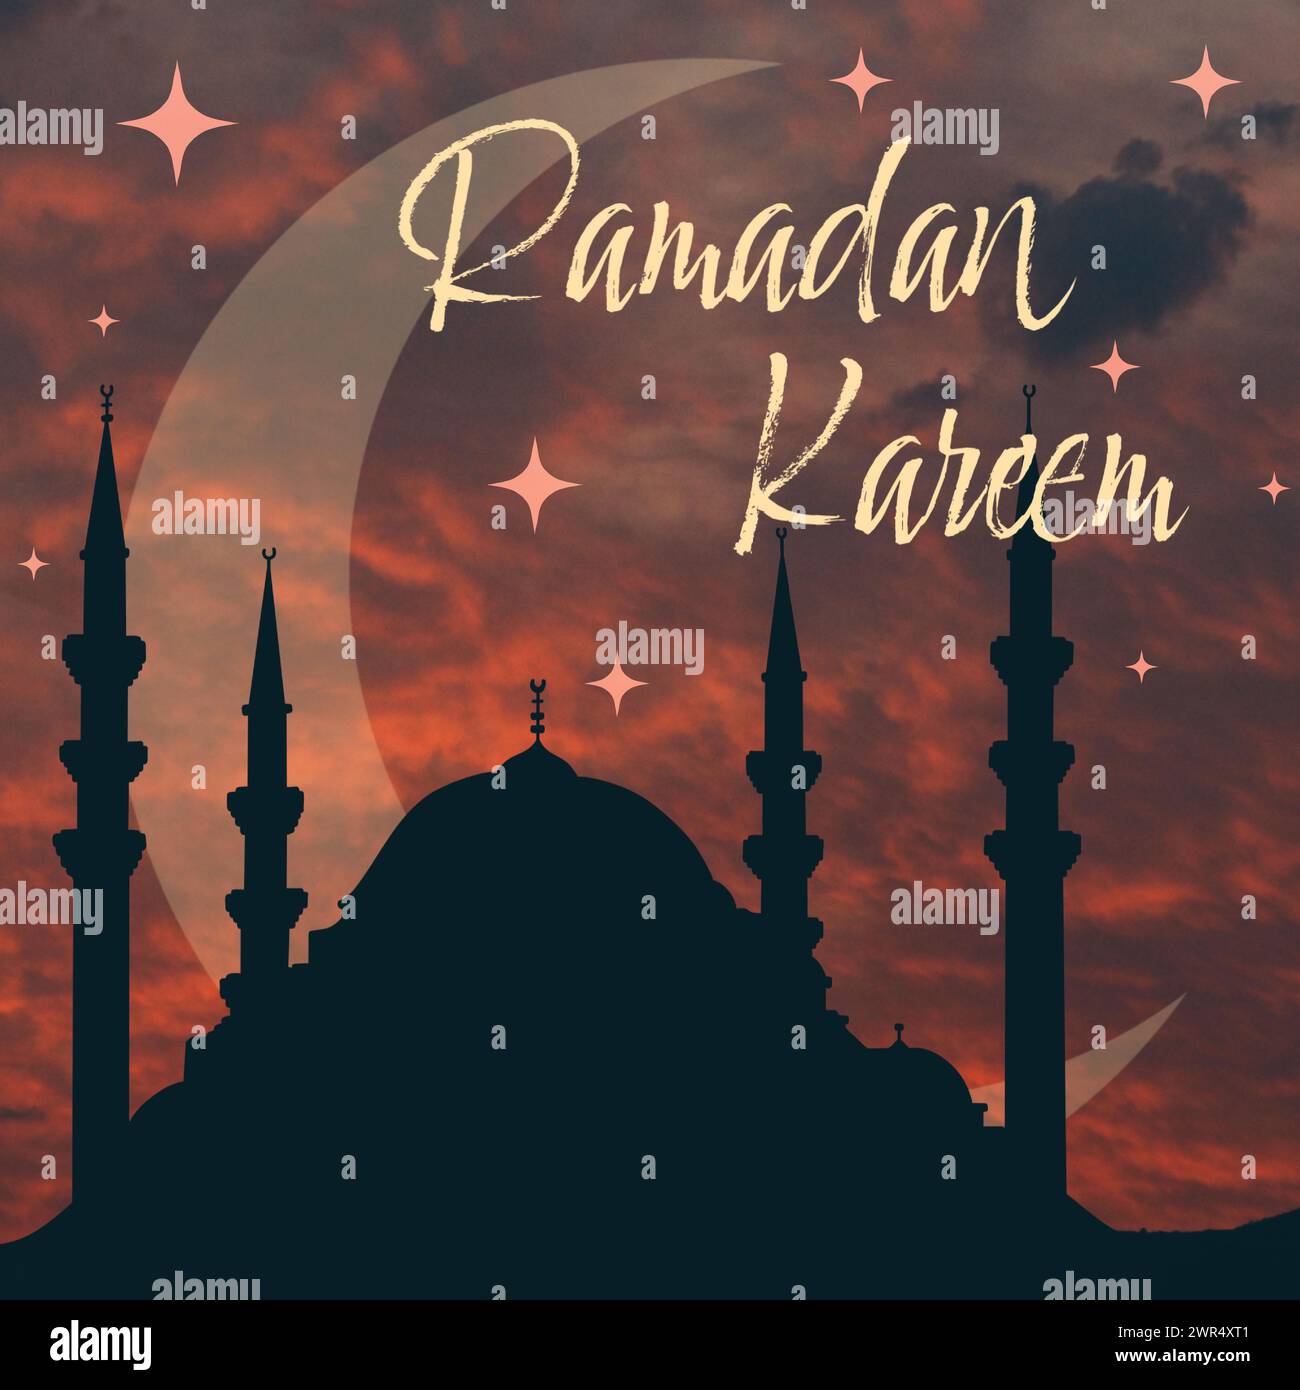 Ramadan-Grußkarte, Ramadan Kareem. Islamischer Hintergrund mit Moschee und wunderschönem Sonnenuntergang Stock Vektor